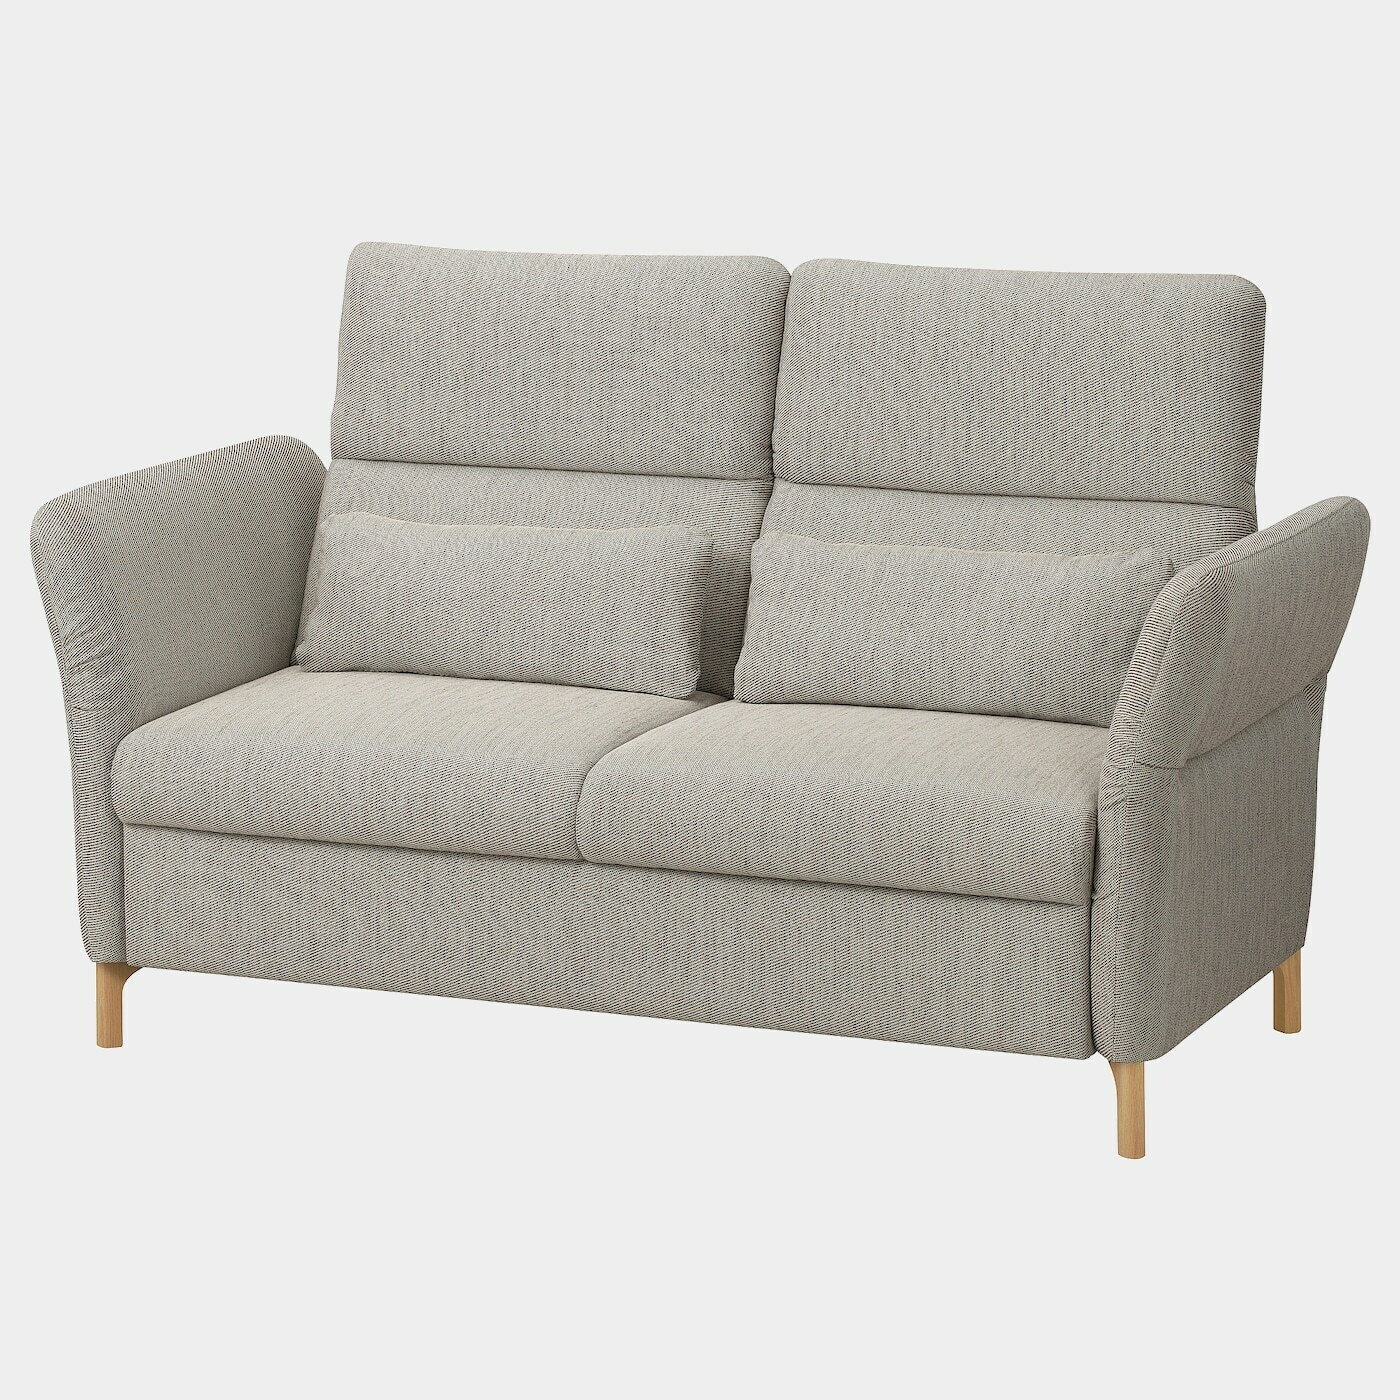 FAMMARP 2er-Sofa  -  - Möbel Ideen für dein Zuhause von Home Trends. Möbel Trends von Social Media Influencer für dein Skandi Zuhause.